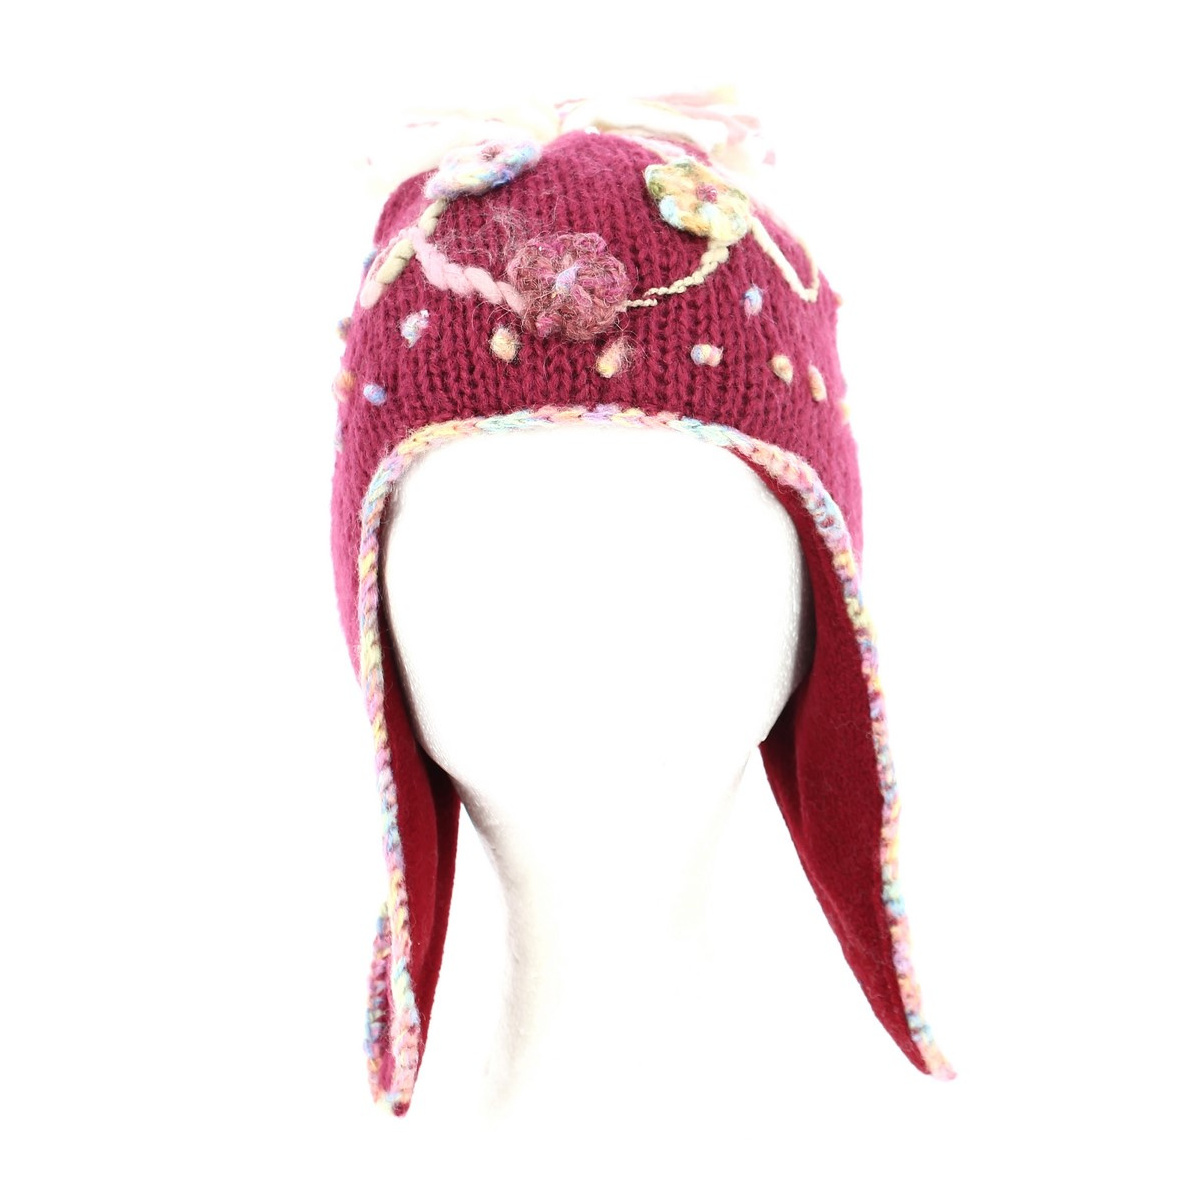 Bonnet peruvien fille ⇒ Achat bonnet inca, couleur cerise Reference : 1207